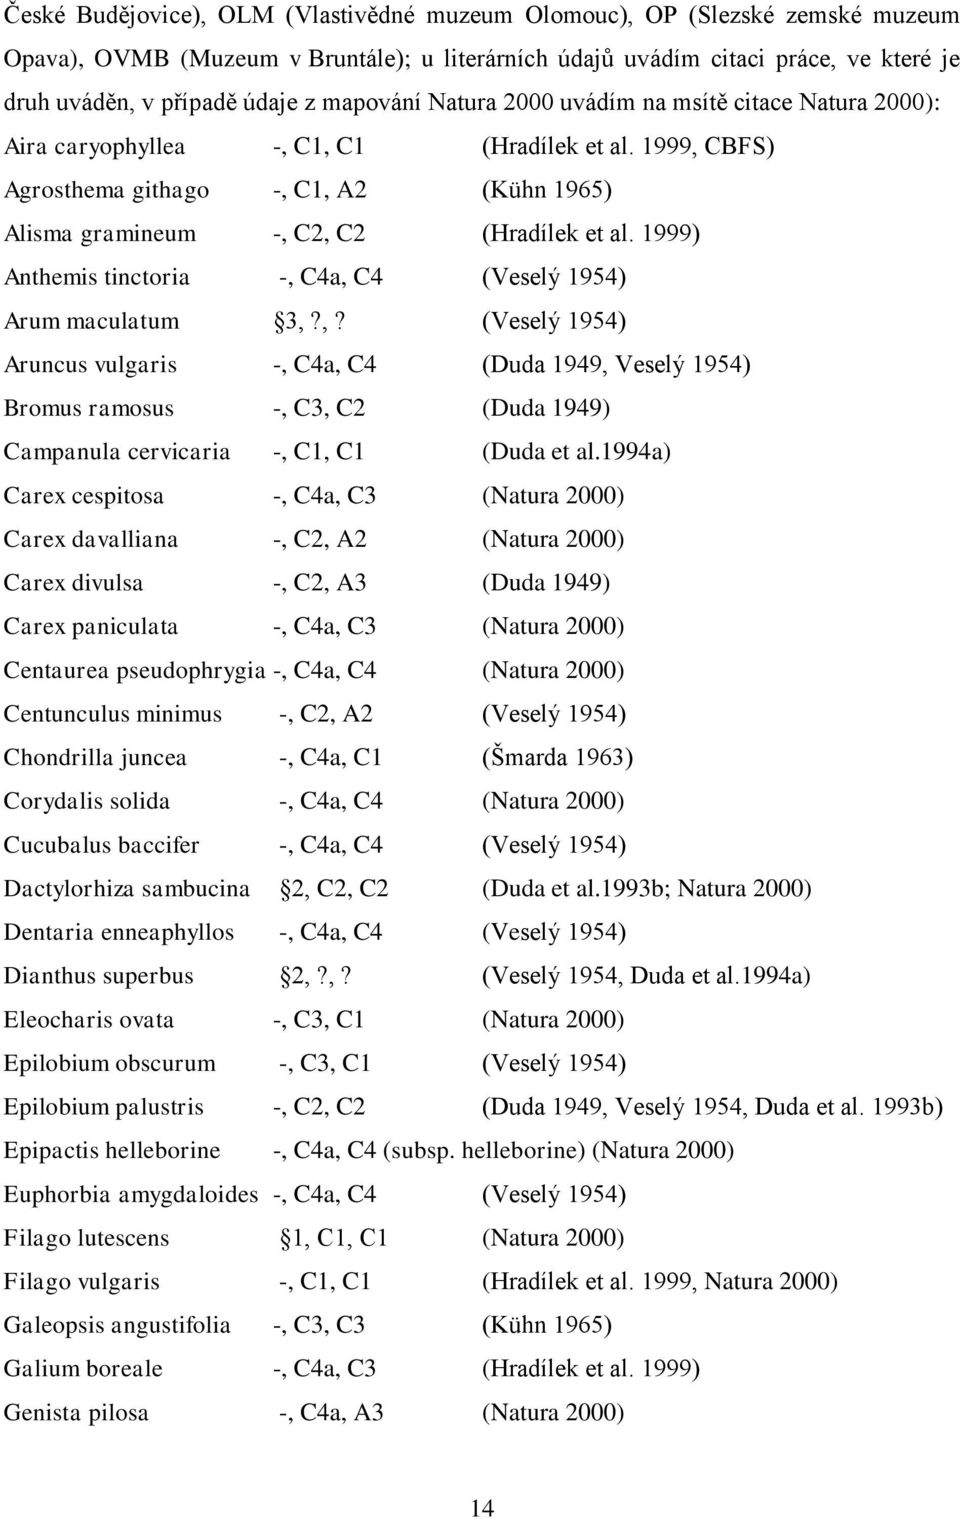 1999) Anthemis tinctoria -, C4a, C4 (Veselý 1954) Arum maculatum 3,?,? (Veselý 1954) Aruncus vulgaris -, C4a, C4 (Duda 1949, Veselý 1954) Bromus ramosus -, C3, C2 (Duda 1949) Campanula cervicaria -, C1, C1 (Duda et al.